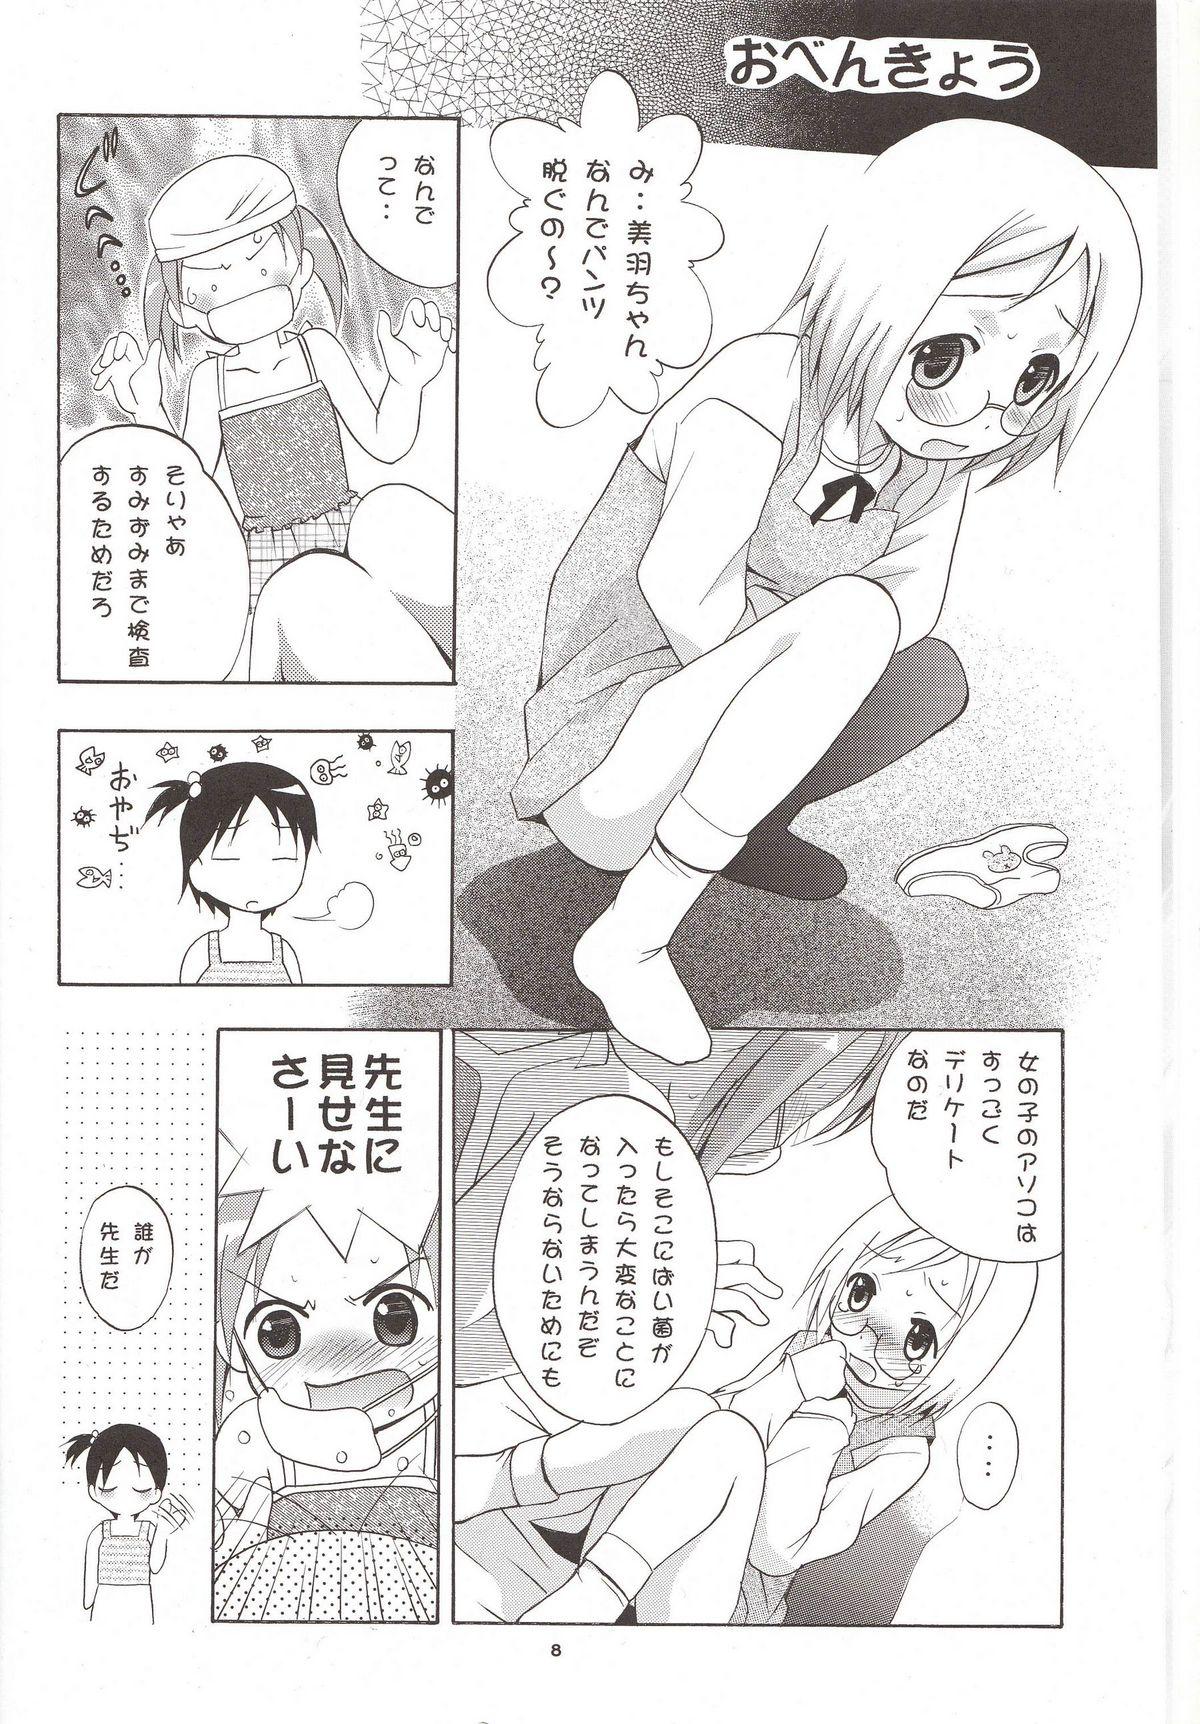 Sucks Mousou Mini Theater 16 - Ichigo mashimaro Pretty - Page 7